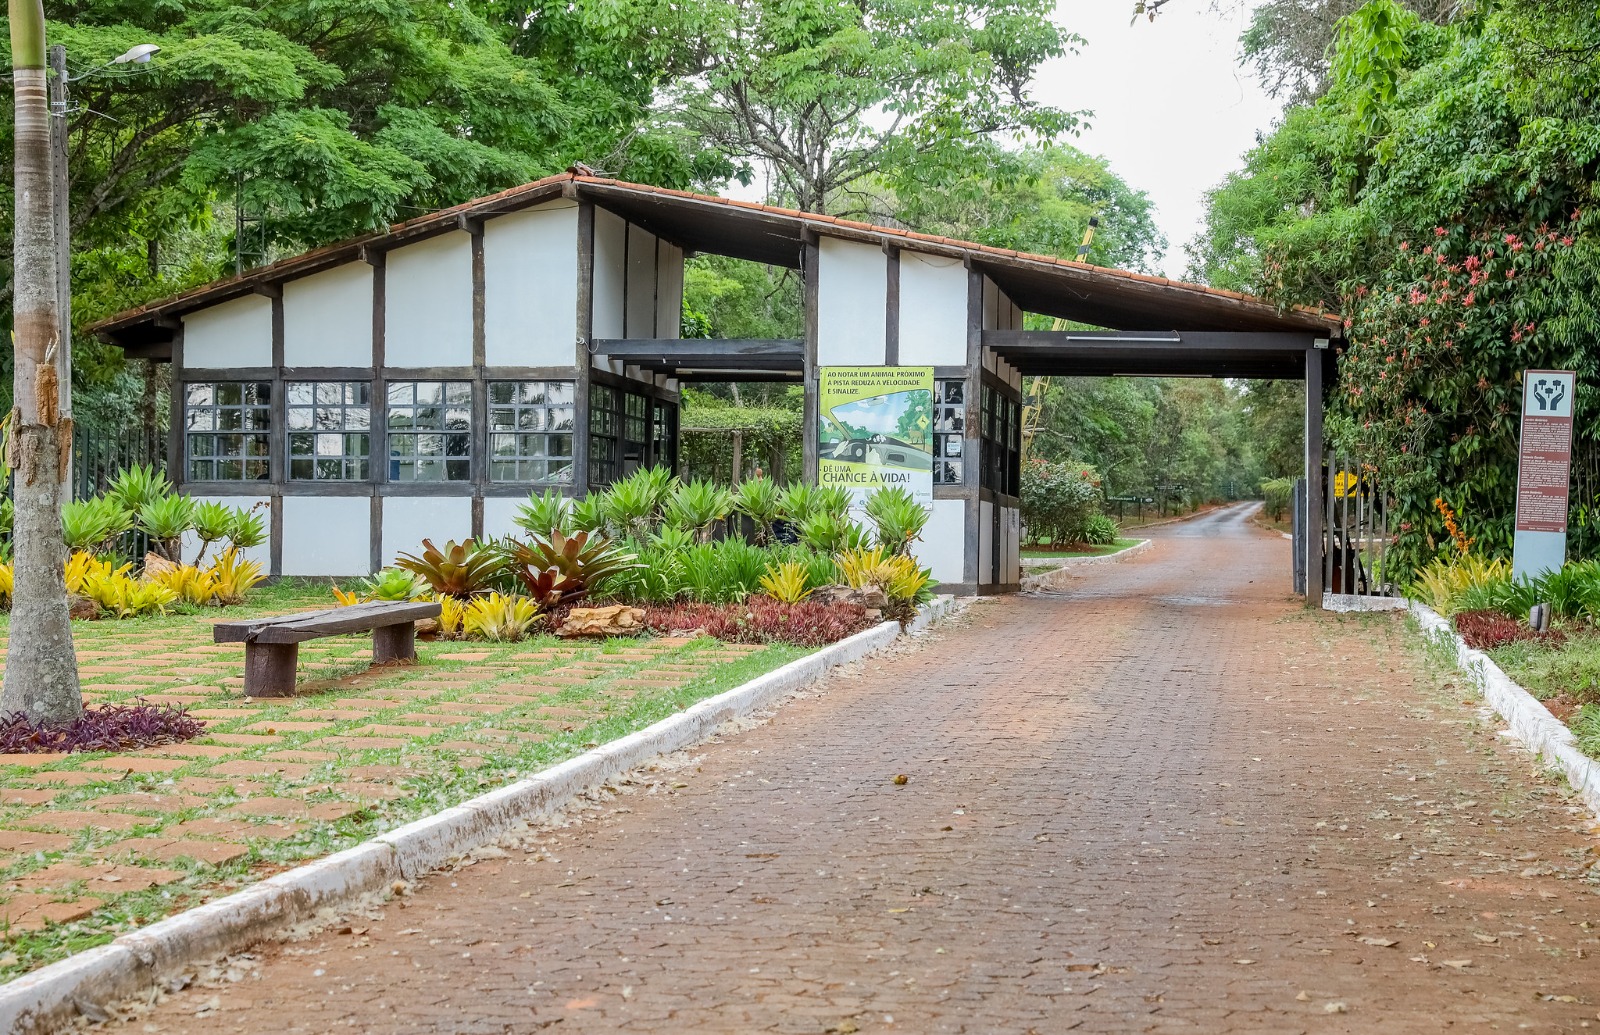 Aniversário de 39 anos do Jardim Botânico de Brasília tem trilhas, oficinas de artesanato, shows e espetáculos | Foto: Paulo H. Carvalho/ Agência Brasília